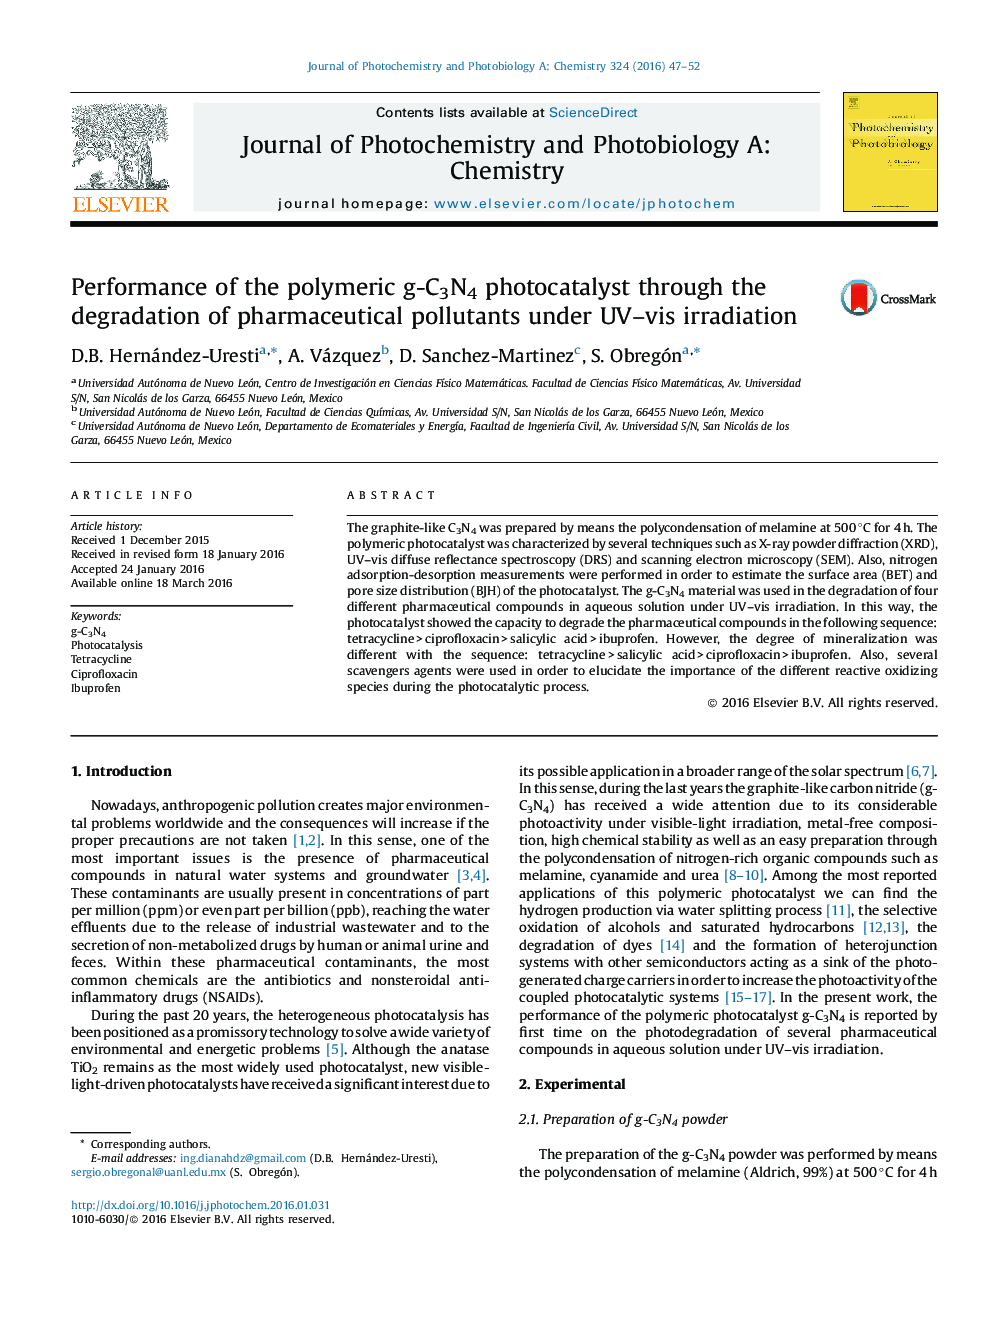 عملکرد فوتوکاتالیست پلیمر g-C3N4 از طریق تخریب آلاینده های دارویی تحت اشعه UV-vis